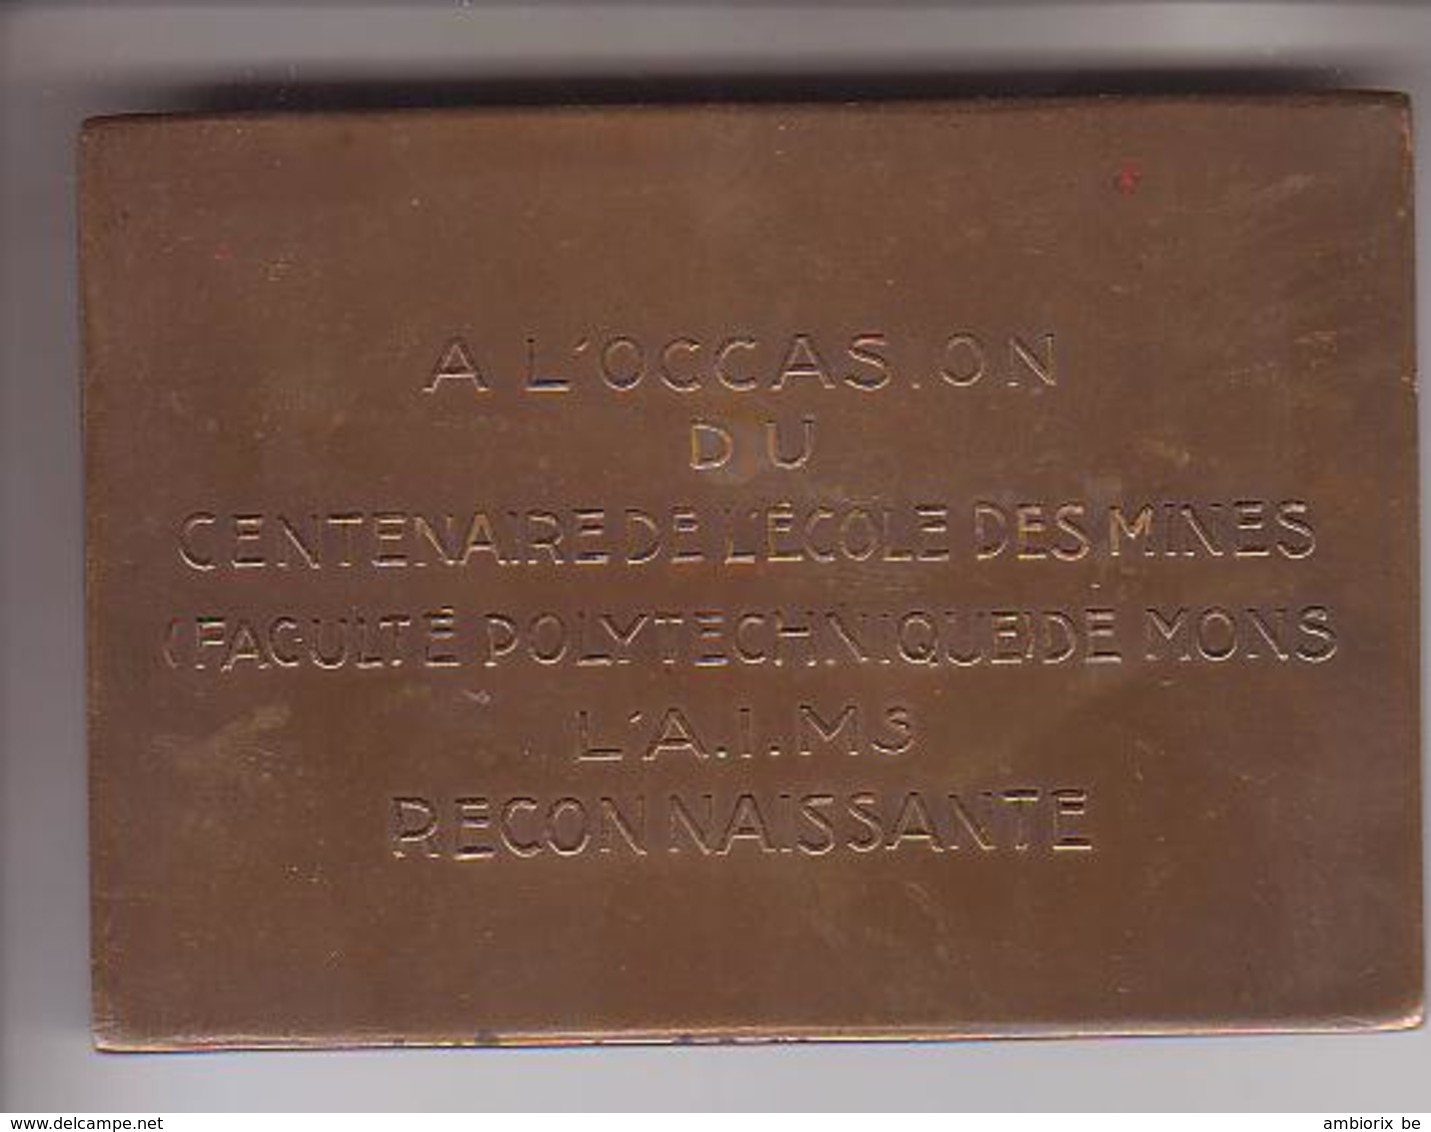 Centenaire De L'Ecole Des Mines (Faculté Polytechnique De Mons) 1837 - 1937 - Devillez Macquet Halleux Yernaux - Professionals / Firms